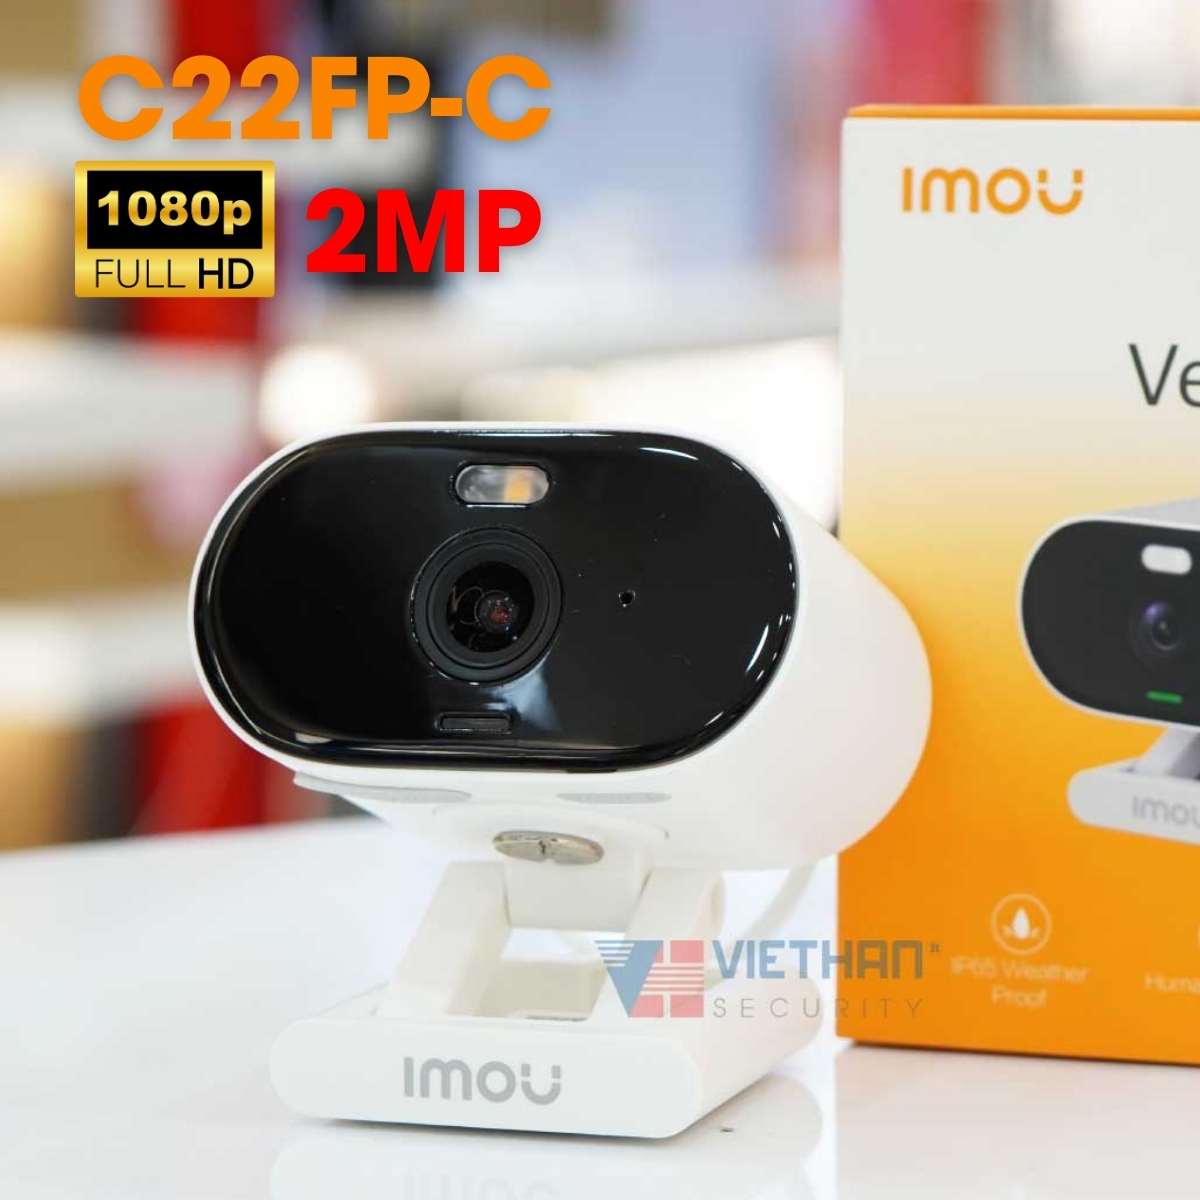 Camera Wifi Imou Versa IPC-C22FP-C 2MP 1080P, đàm thoại 2 chiều, phát hiện con người, tích hợp còi báo động 110dB